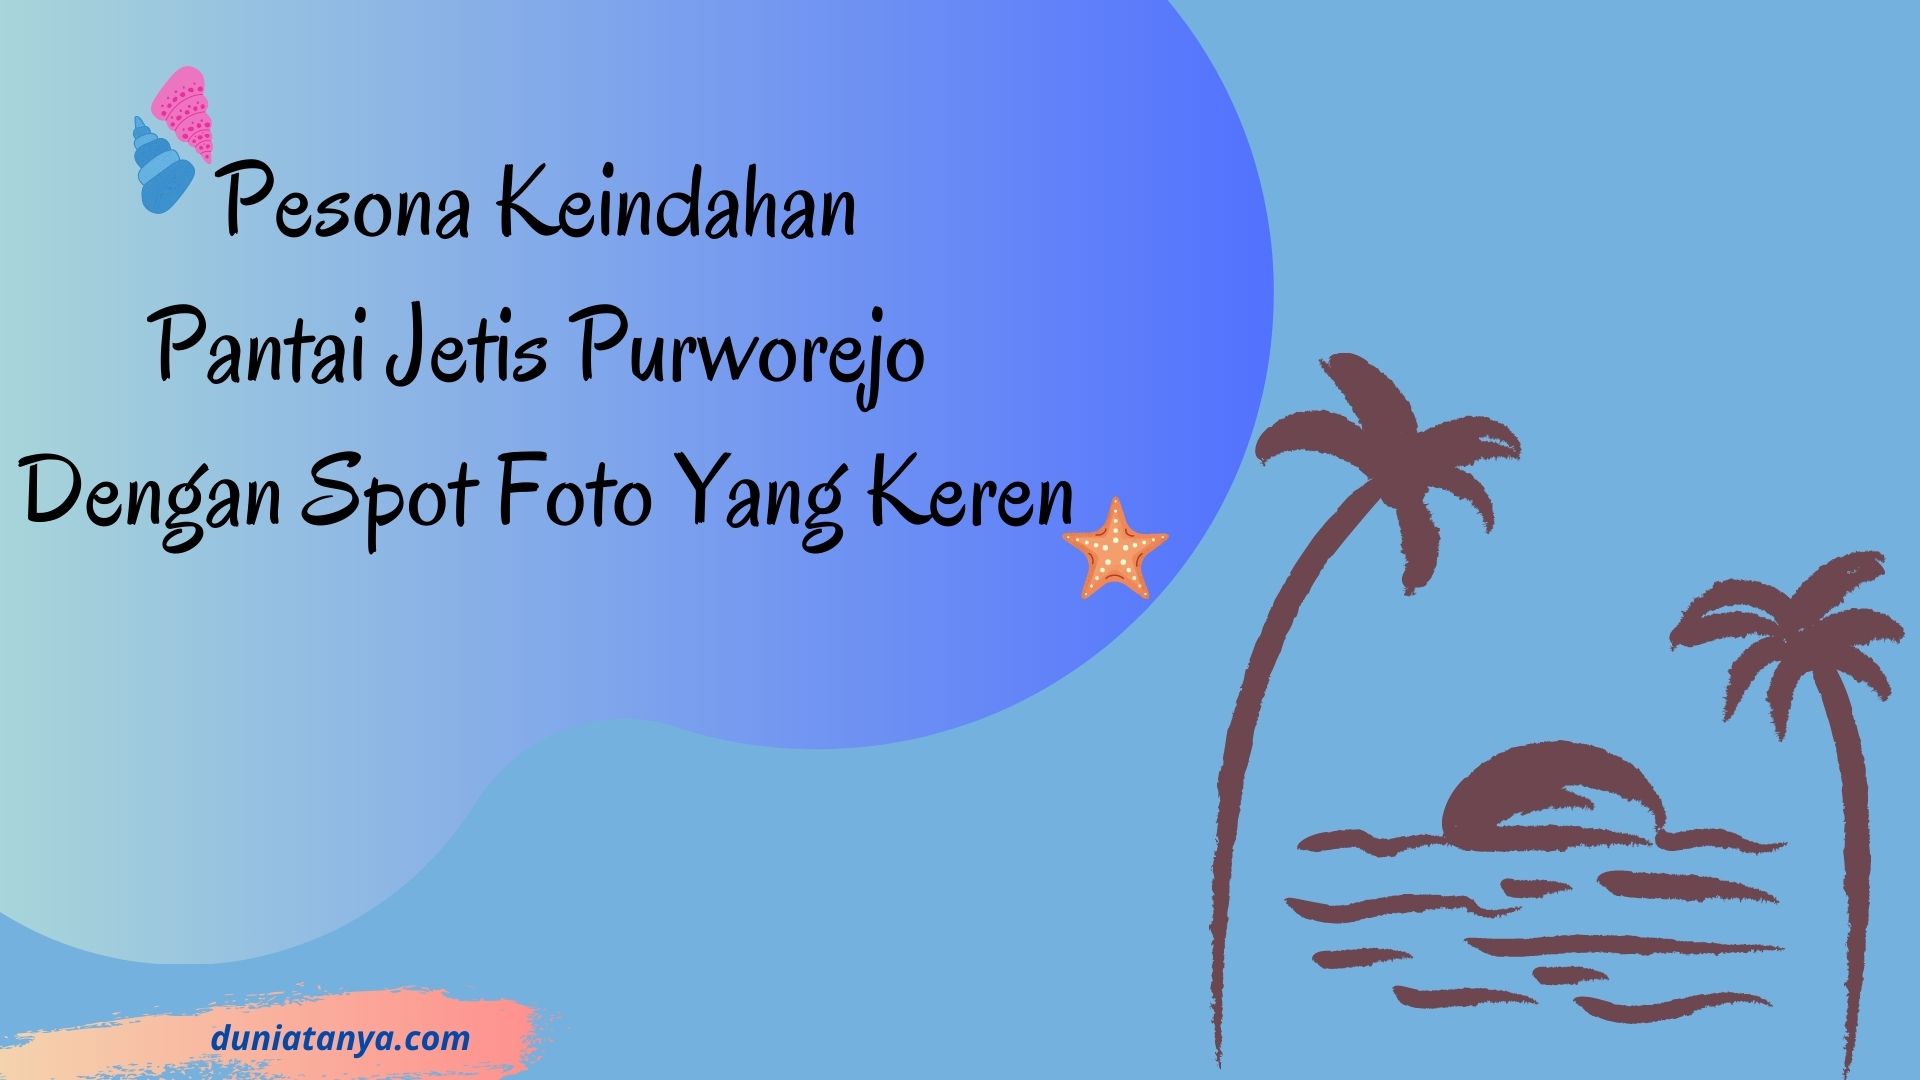 You are currently viewing Pesona Keindahan Pantai Jetis Purworejo Dengan Spot Foto Yang Keren